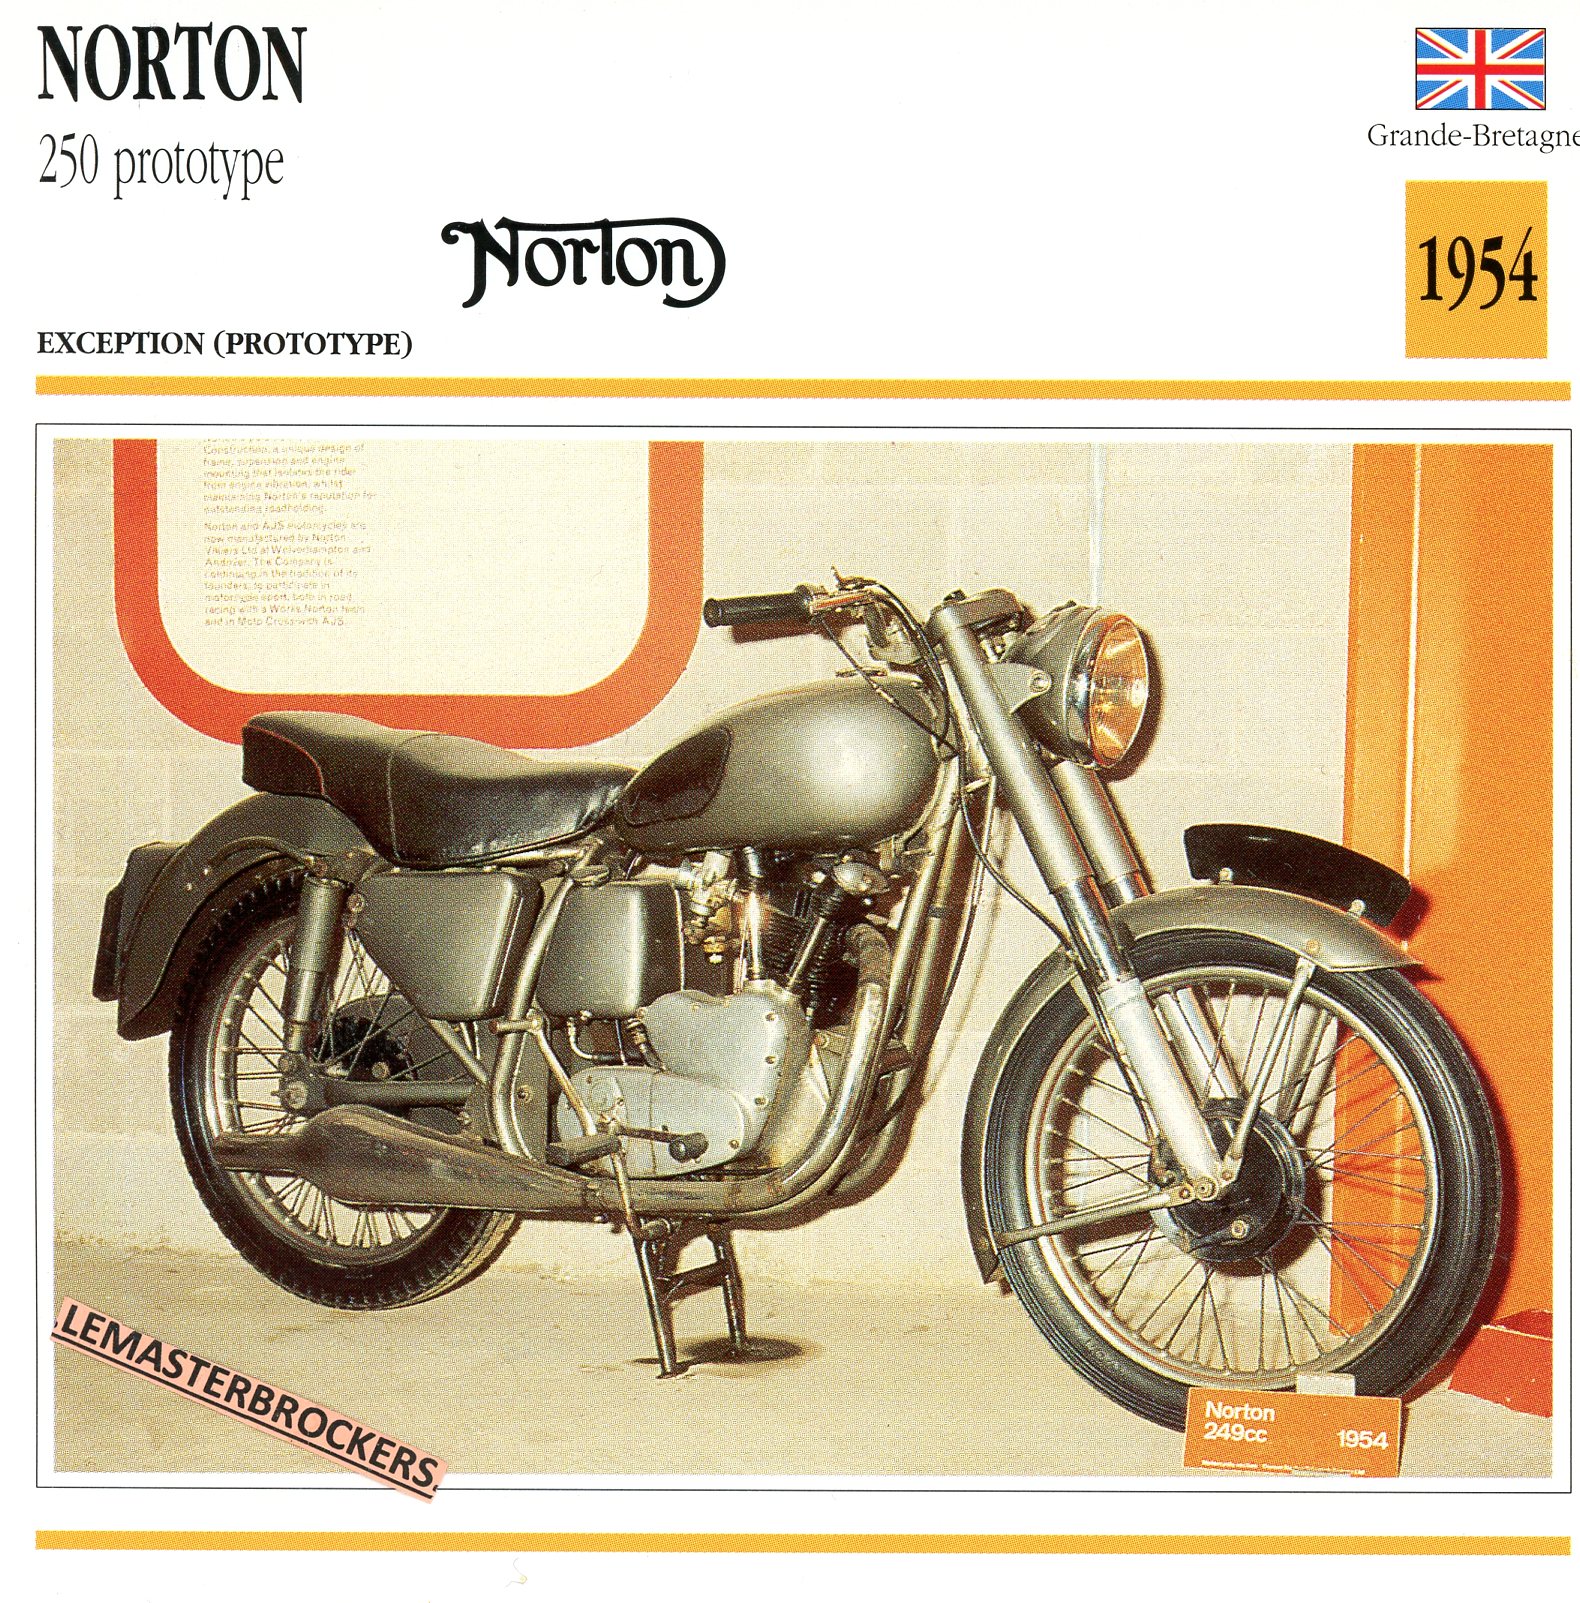 NORTON-250-PROTOTYPE-1954-FICHE-MOTO-ATLAS-lemasterbrockers-CARD-MOTORCYCLE